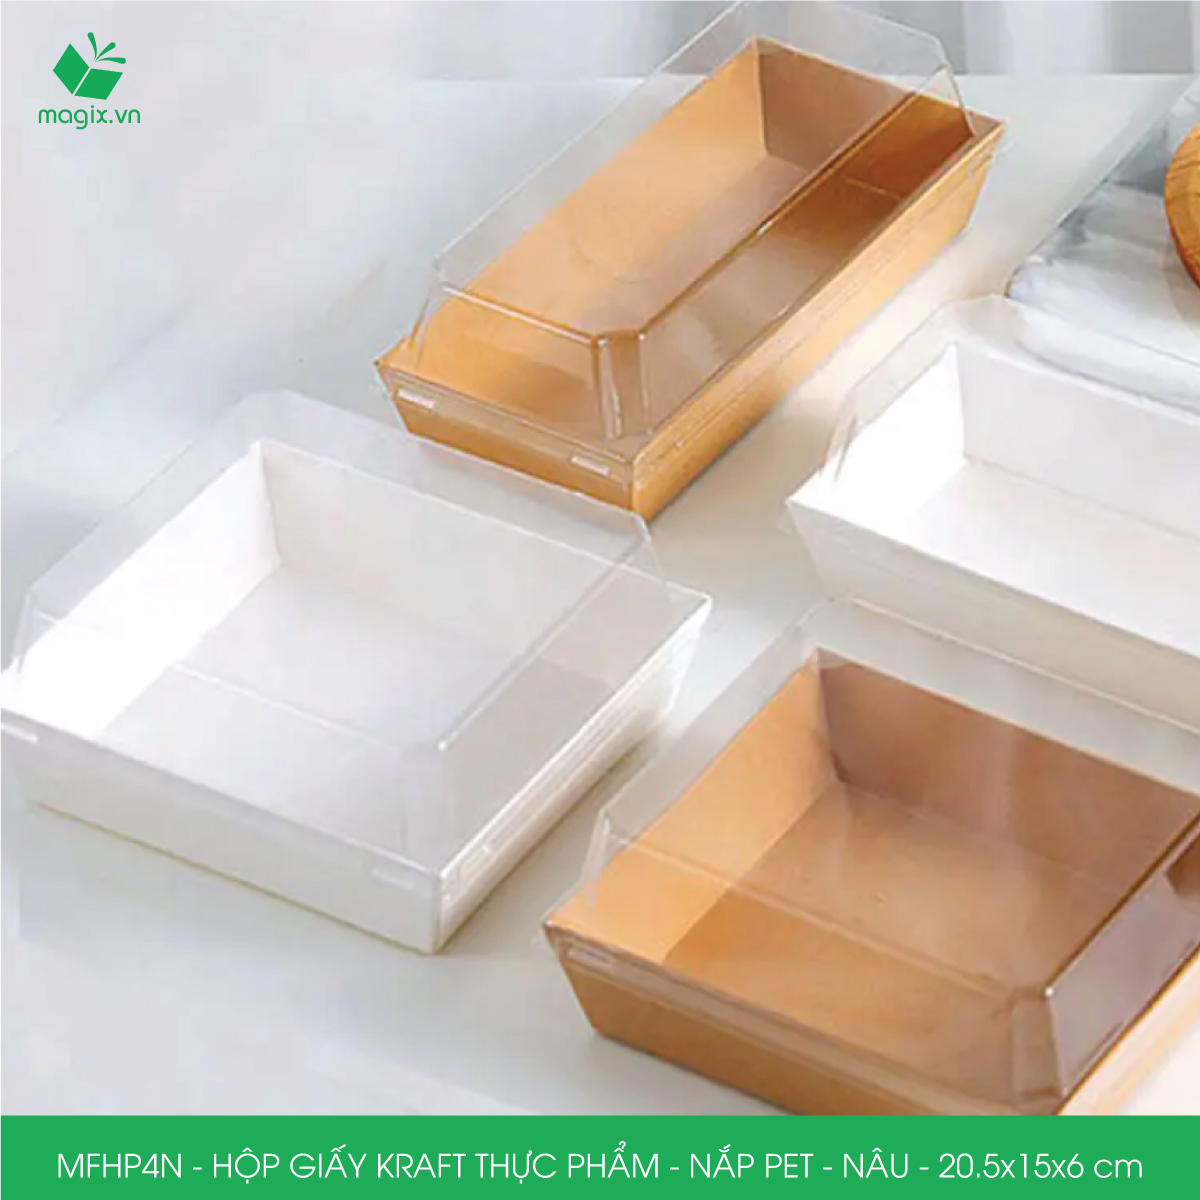 MFHP4N - 20.5x15x6 cm -100 hộp giấy kraft thực phẩm màu nâu nắp Pet, hộp giấy chữ nhật đựng thức ăn, hộp bánh nắp trong